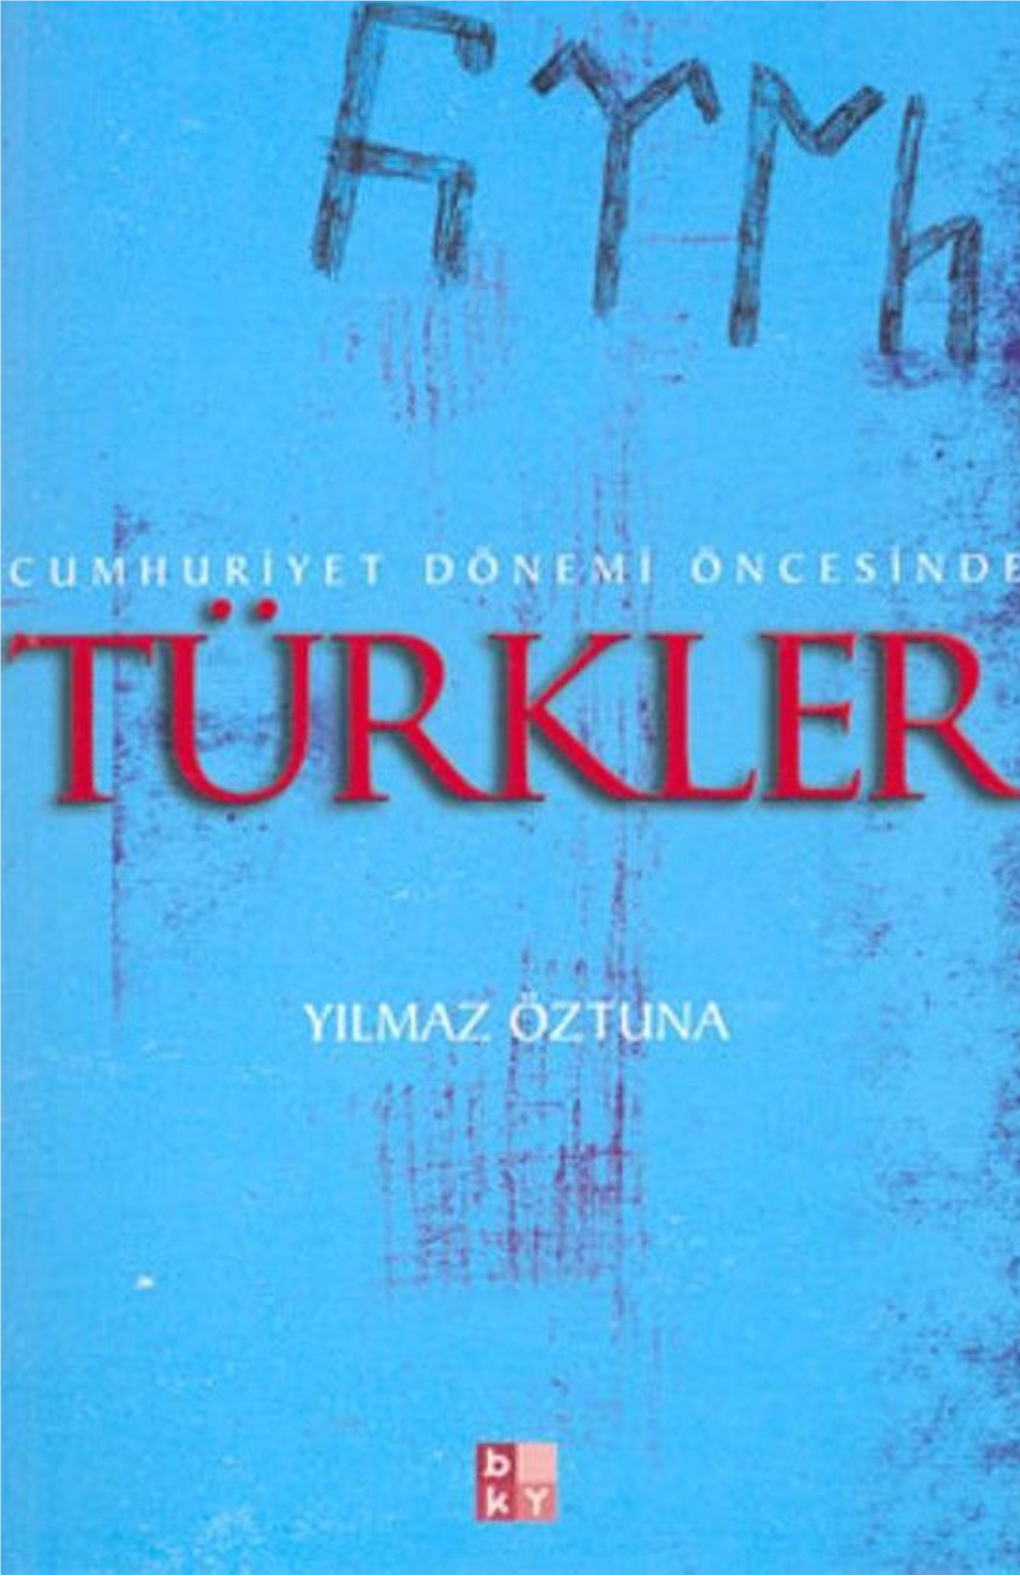 4901-Cumhuriyet Donemi Oncesinde Turkler-Yilmaz